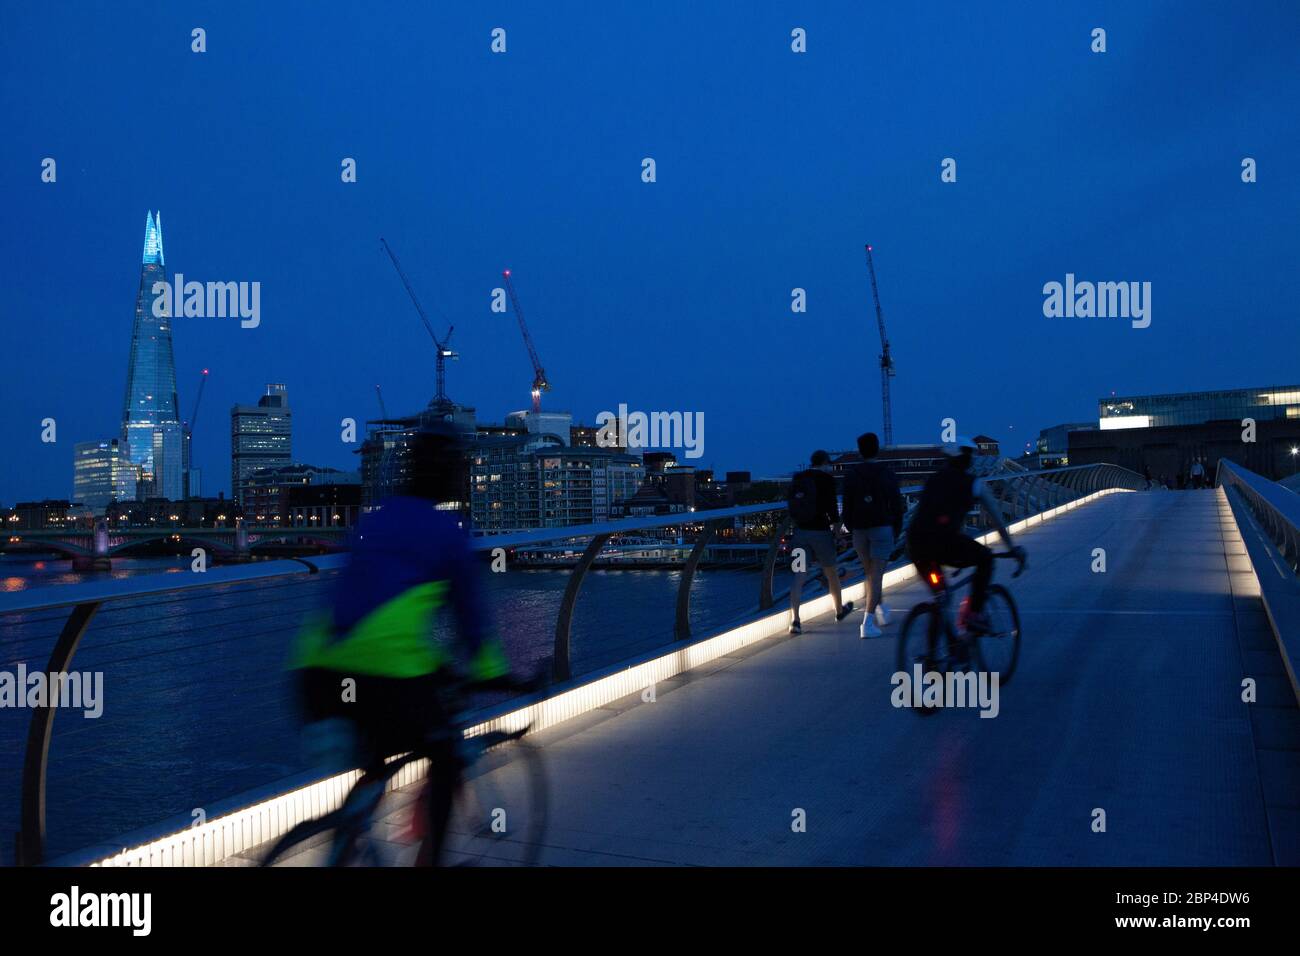 London, Großbritannien, 17. Mai 2020: Menschen gehen und radeln über die Milemmium Bridge, während die Spitze des Shard blau beleuchtet ist und Tate Modern Schilder trägt, die "Danke an Schlüsselarbeiter" sagen, um NHS-Mitarbeiter und andere Pflegekräfte und Schlüsselarbeiter vor Ort zu ehren. Anna Watson/Alamy Live News Stockfoto